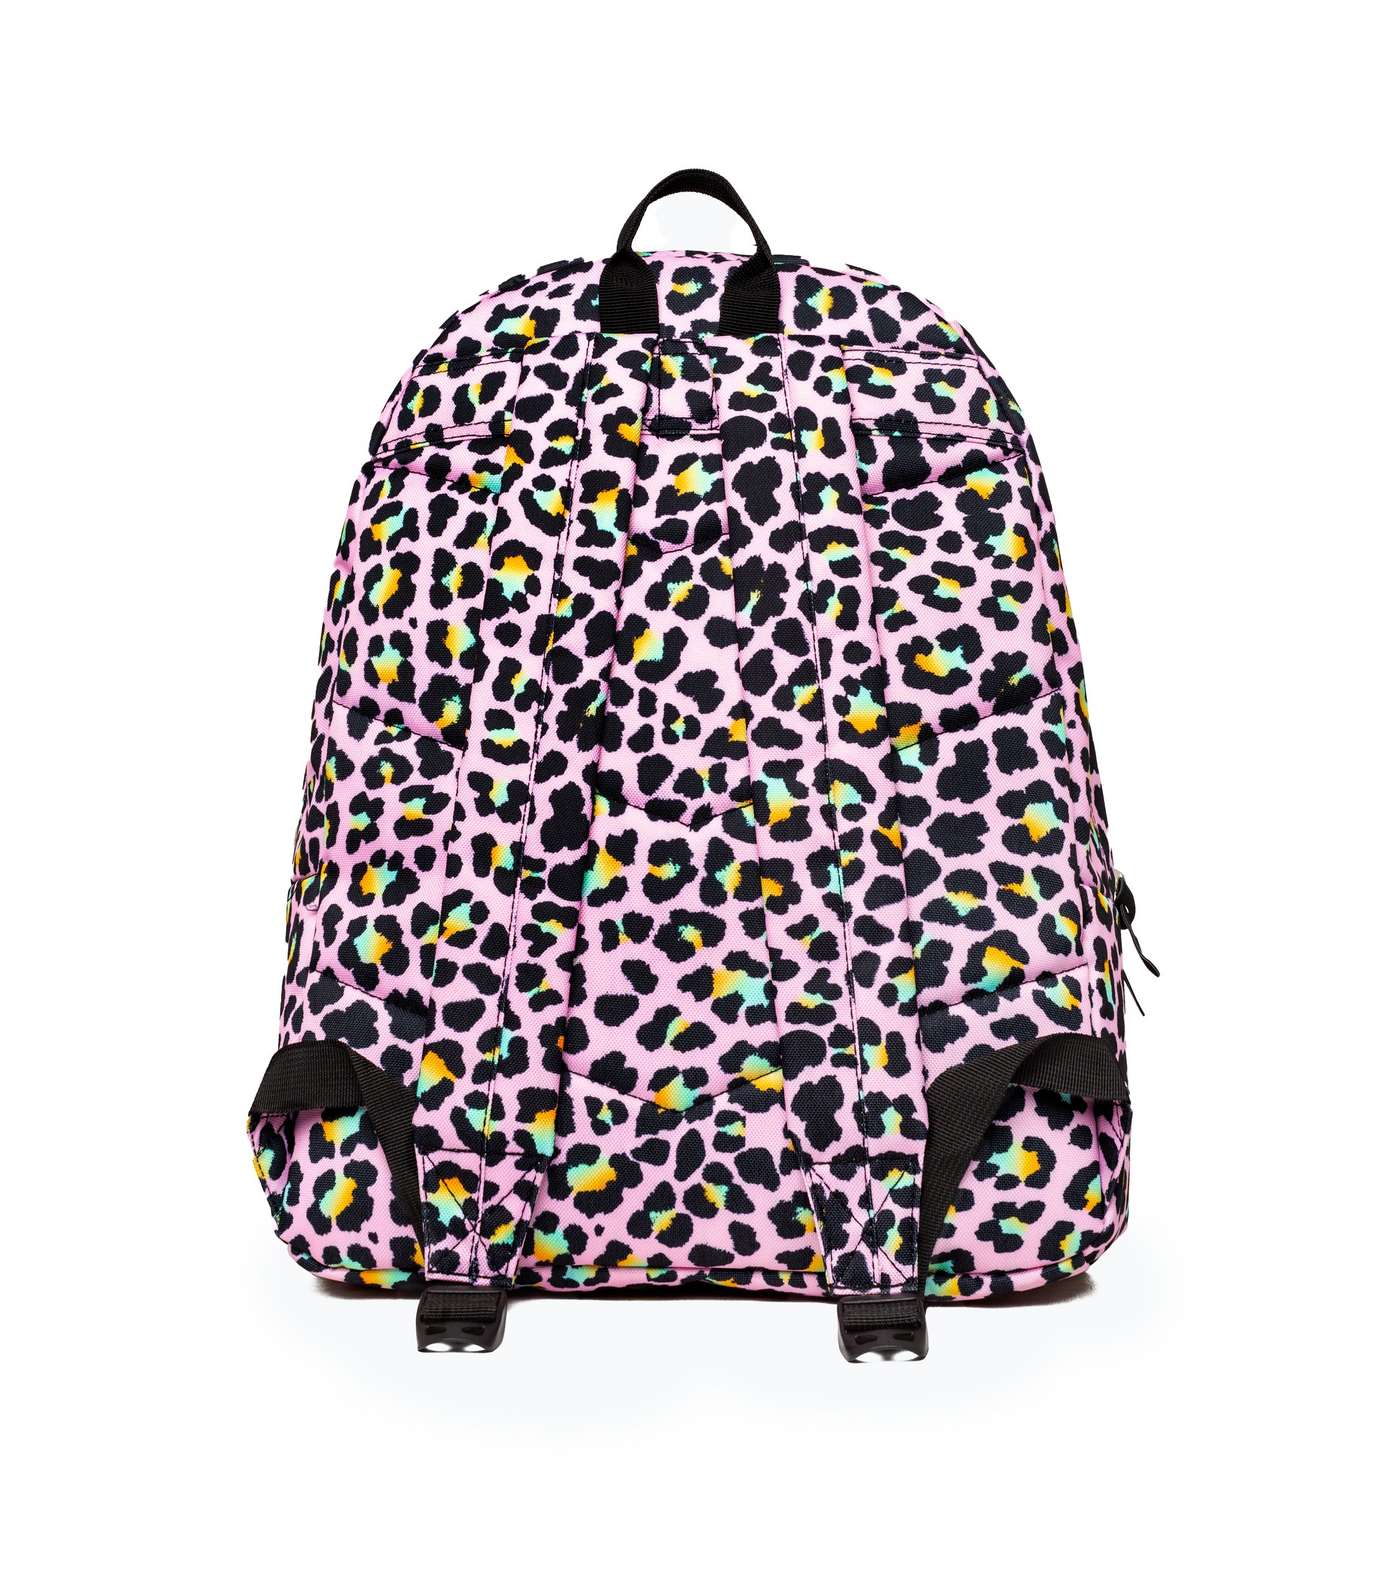 HYPE KIDS Pink Leopard Print Pom Pom Backpack Image 3